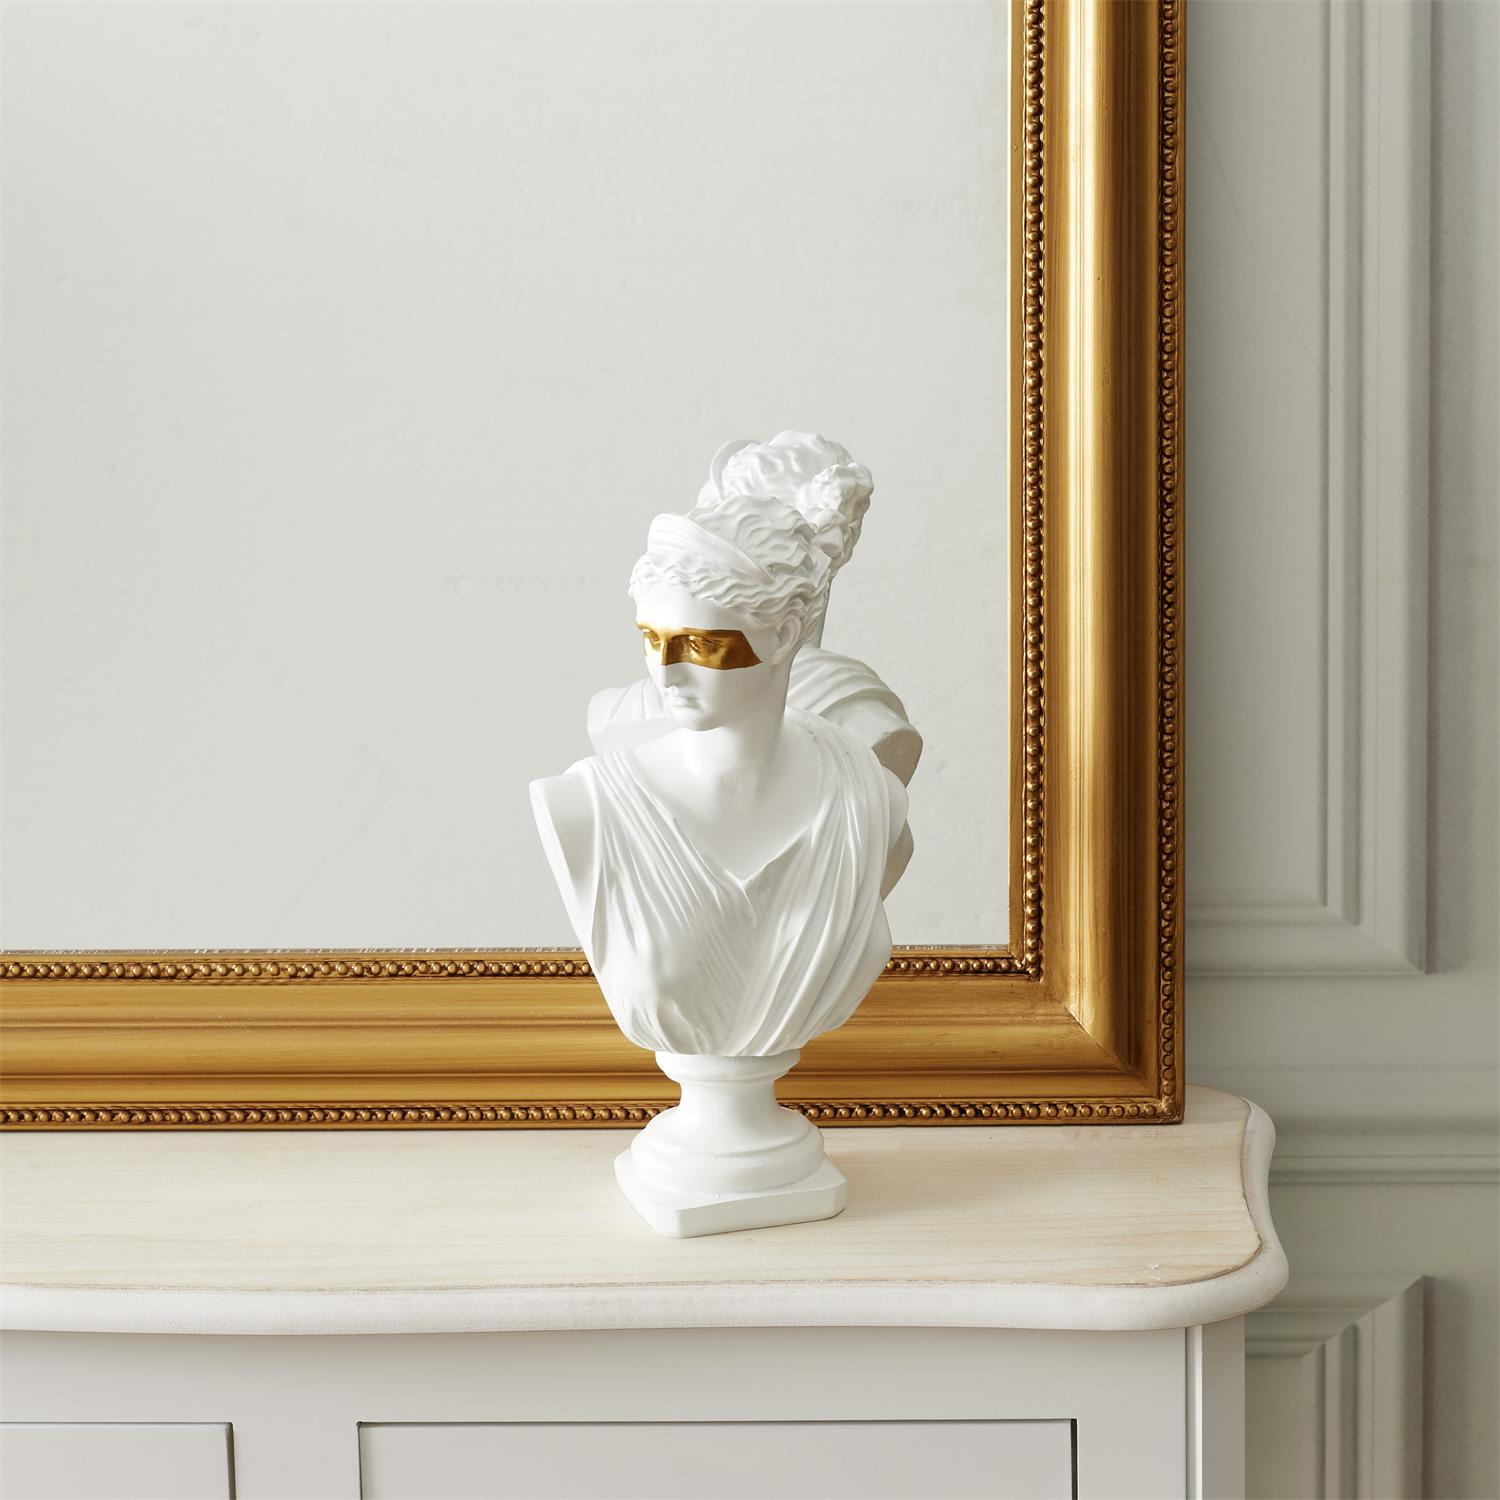 Statut buste decoratif resine deco blanc or figure original masque dore royal femme homme grec art monde sculpture grecque figurine decoration mannequin socle contemporain 5